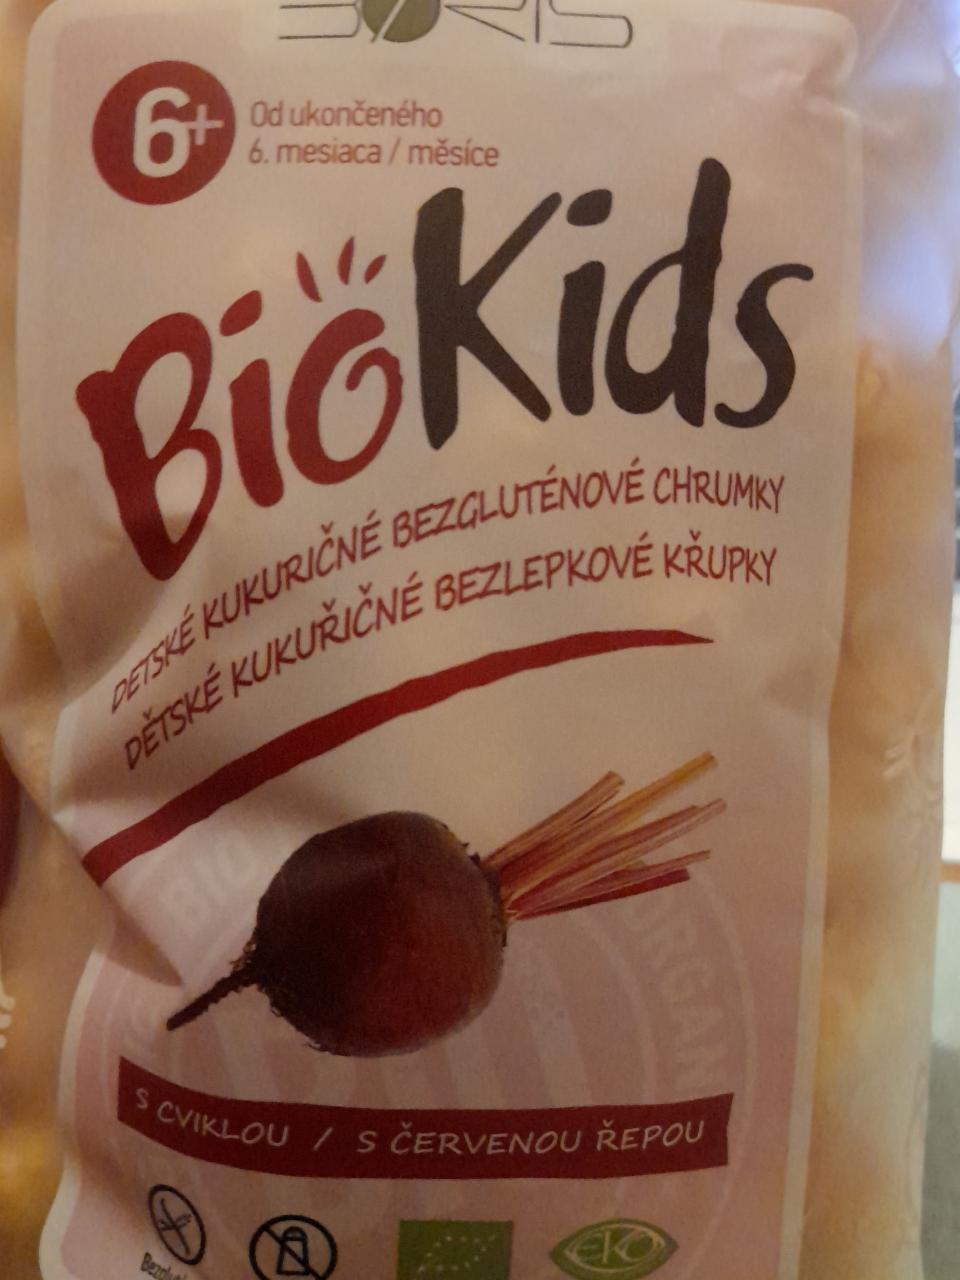 Fotografie - BioKids detské kukuričné bezgluténové chrumky s cviklou